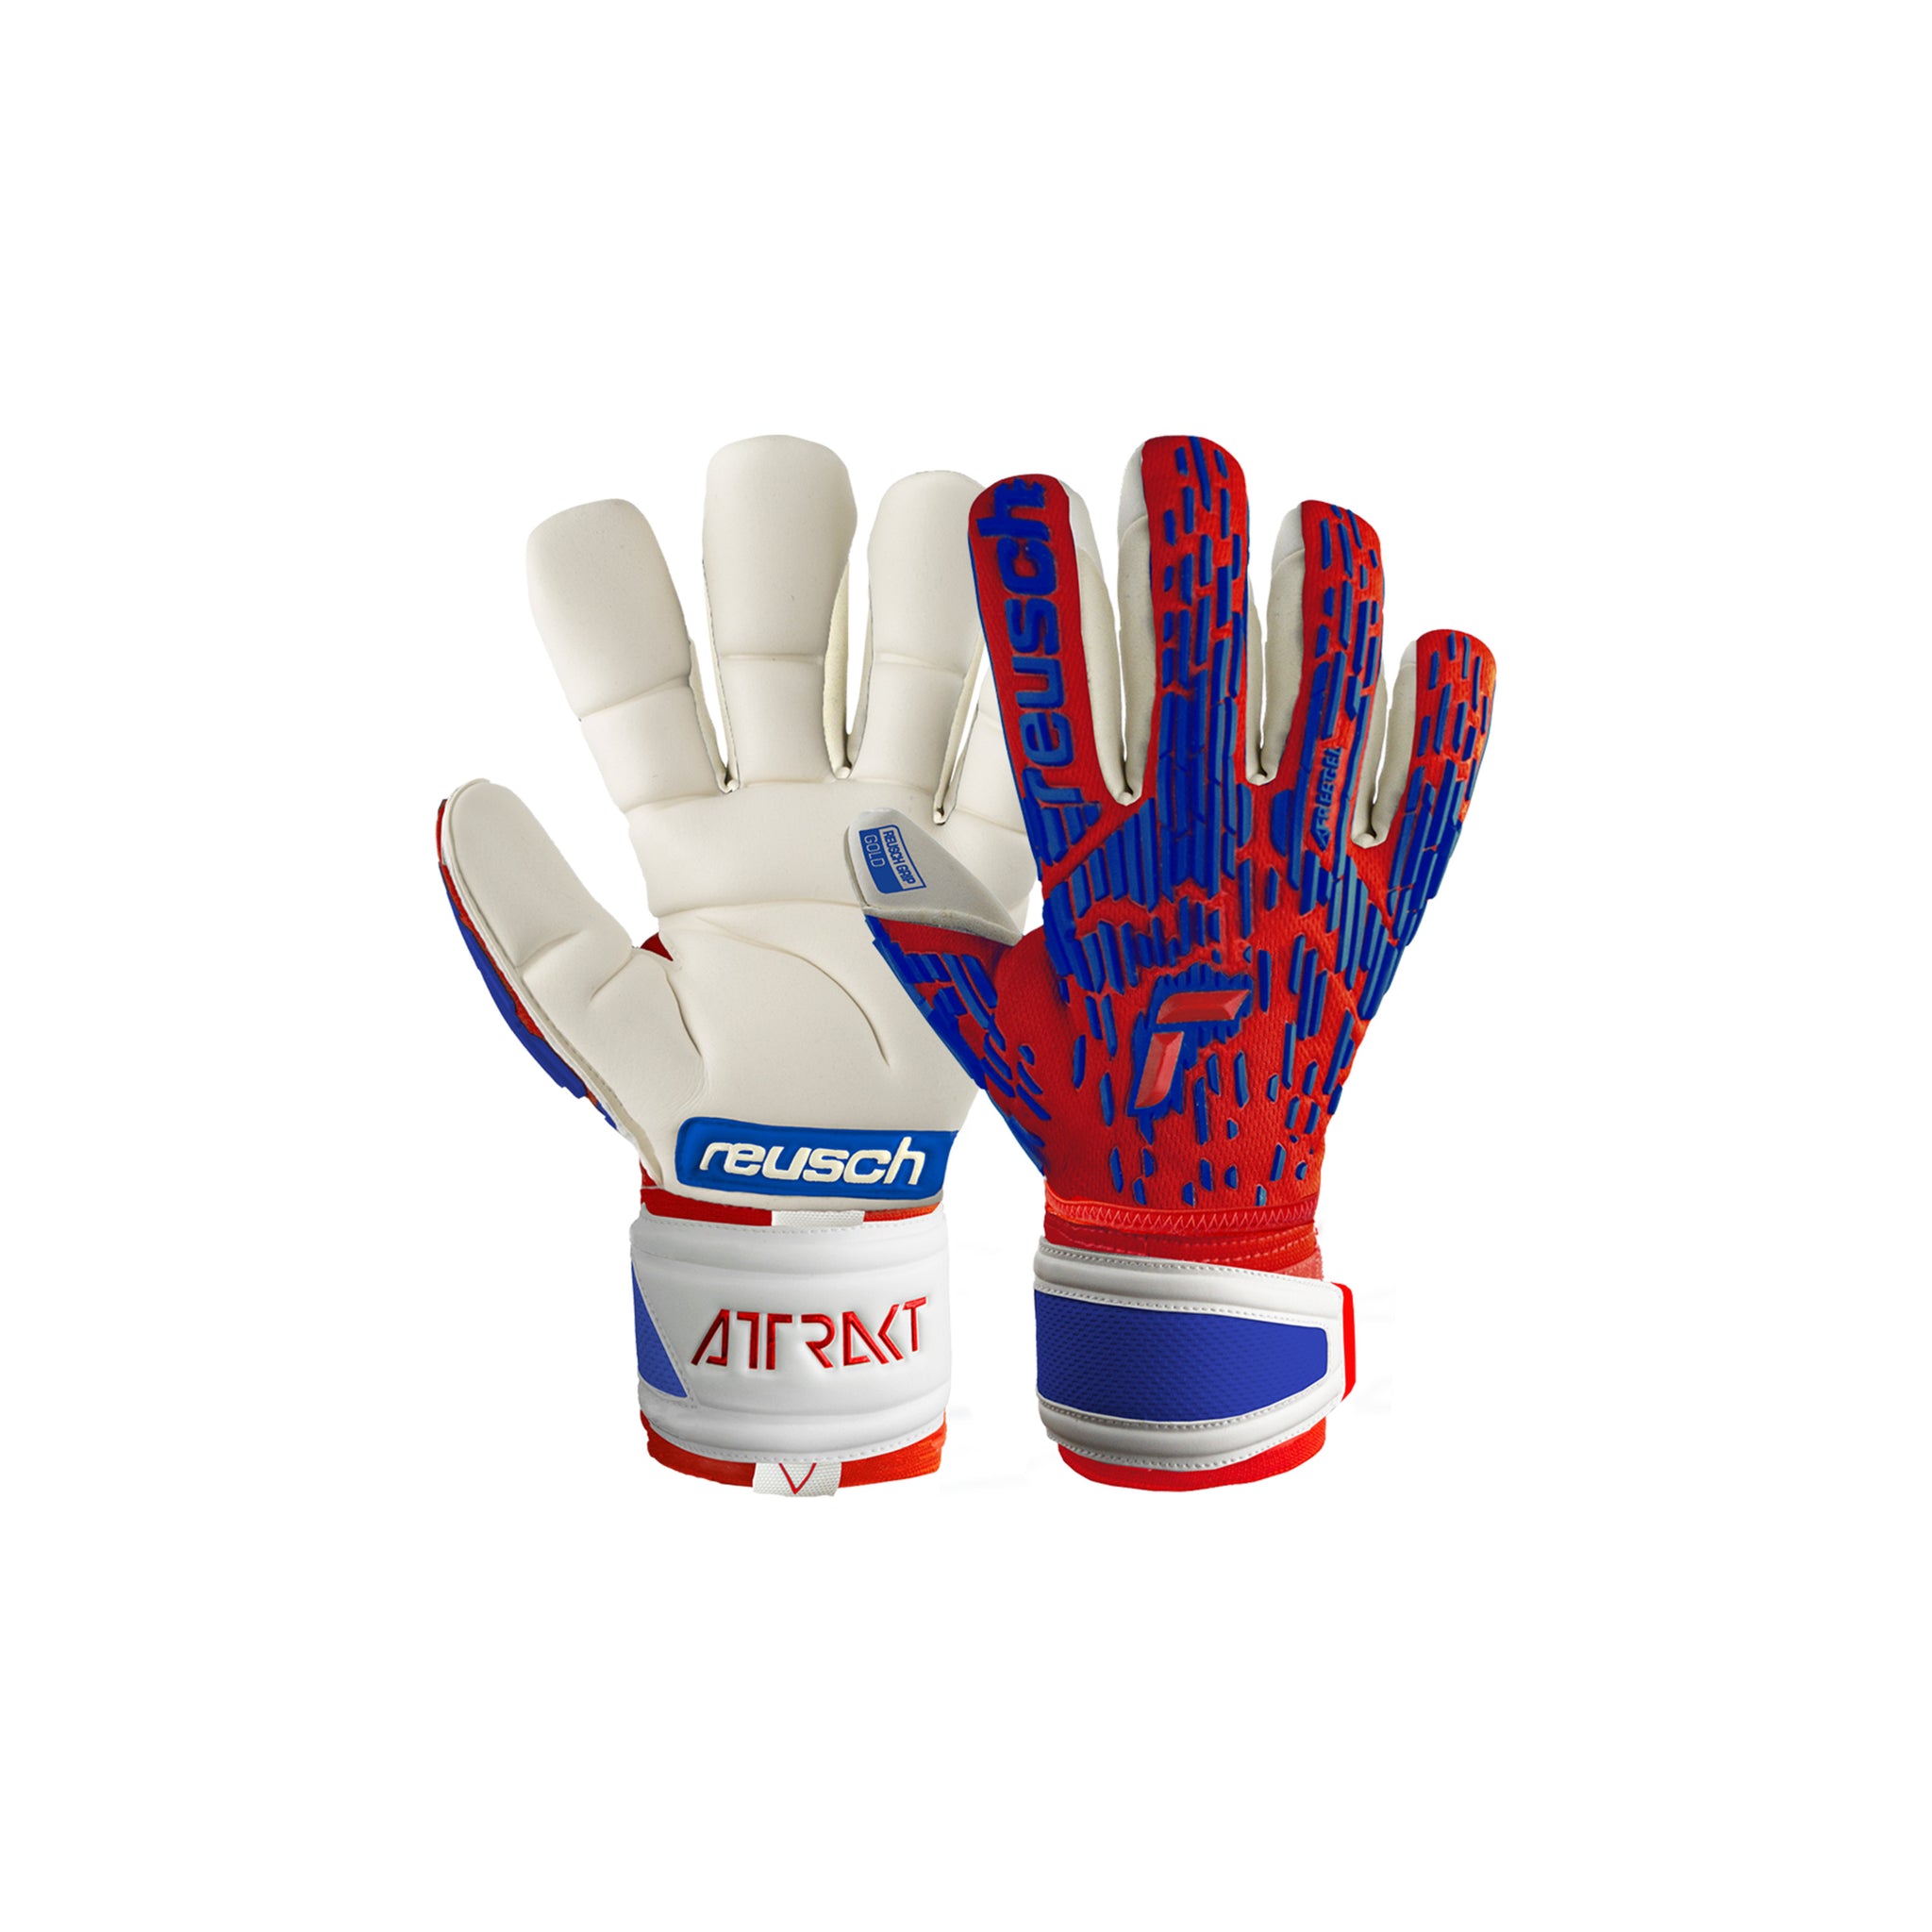 REUSCH Attrakt Freegel Gold Finger Support Gloves